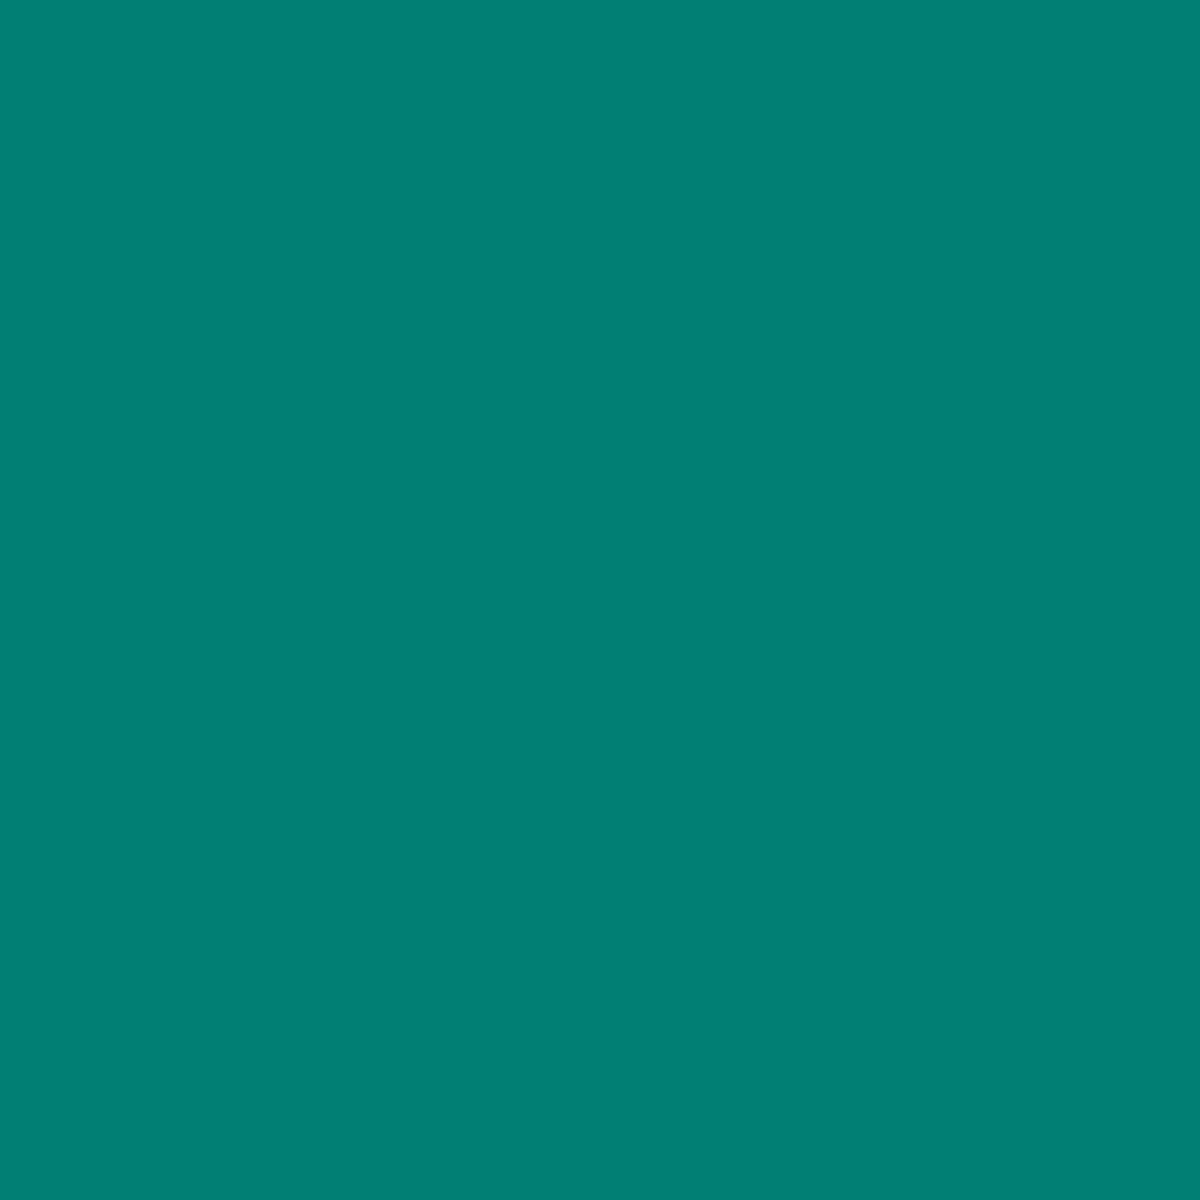 3M Film couleur translucide 3630-236 turquoise 1,22m x 45,7m